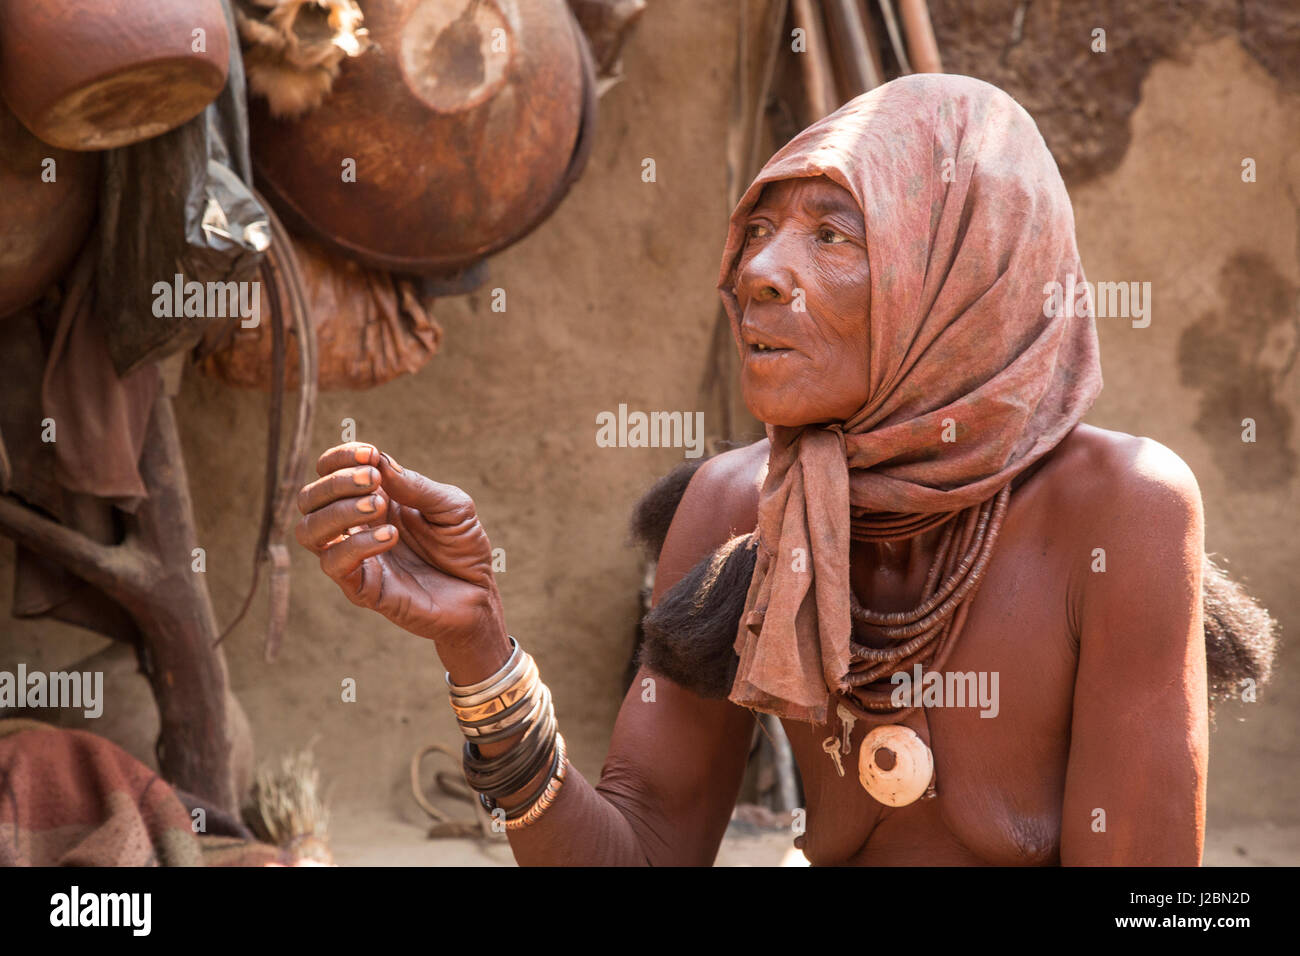 Afrika, Namibia, Opuwo. Ältere Himba-Frau mit Kopfbedeckung. Kredit als: Wendy Kaveney / Jaynes Galerie / DanitaDelimont.com Stockfoto